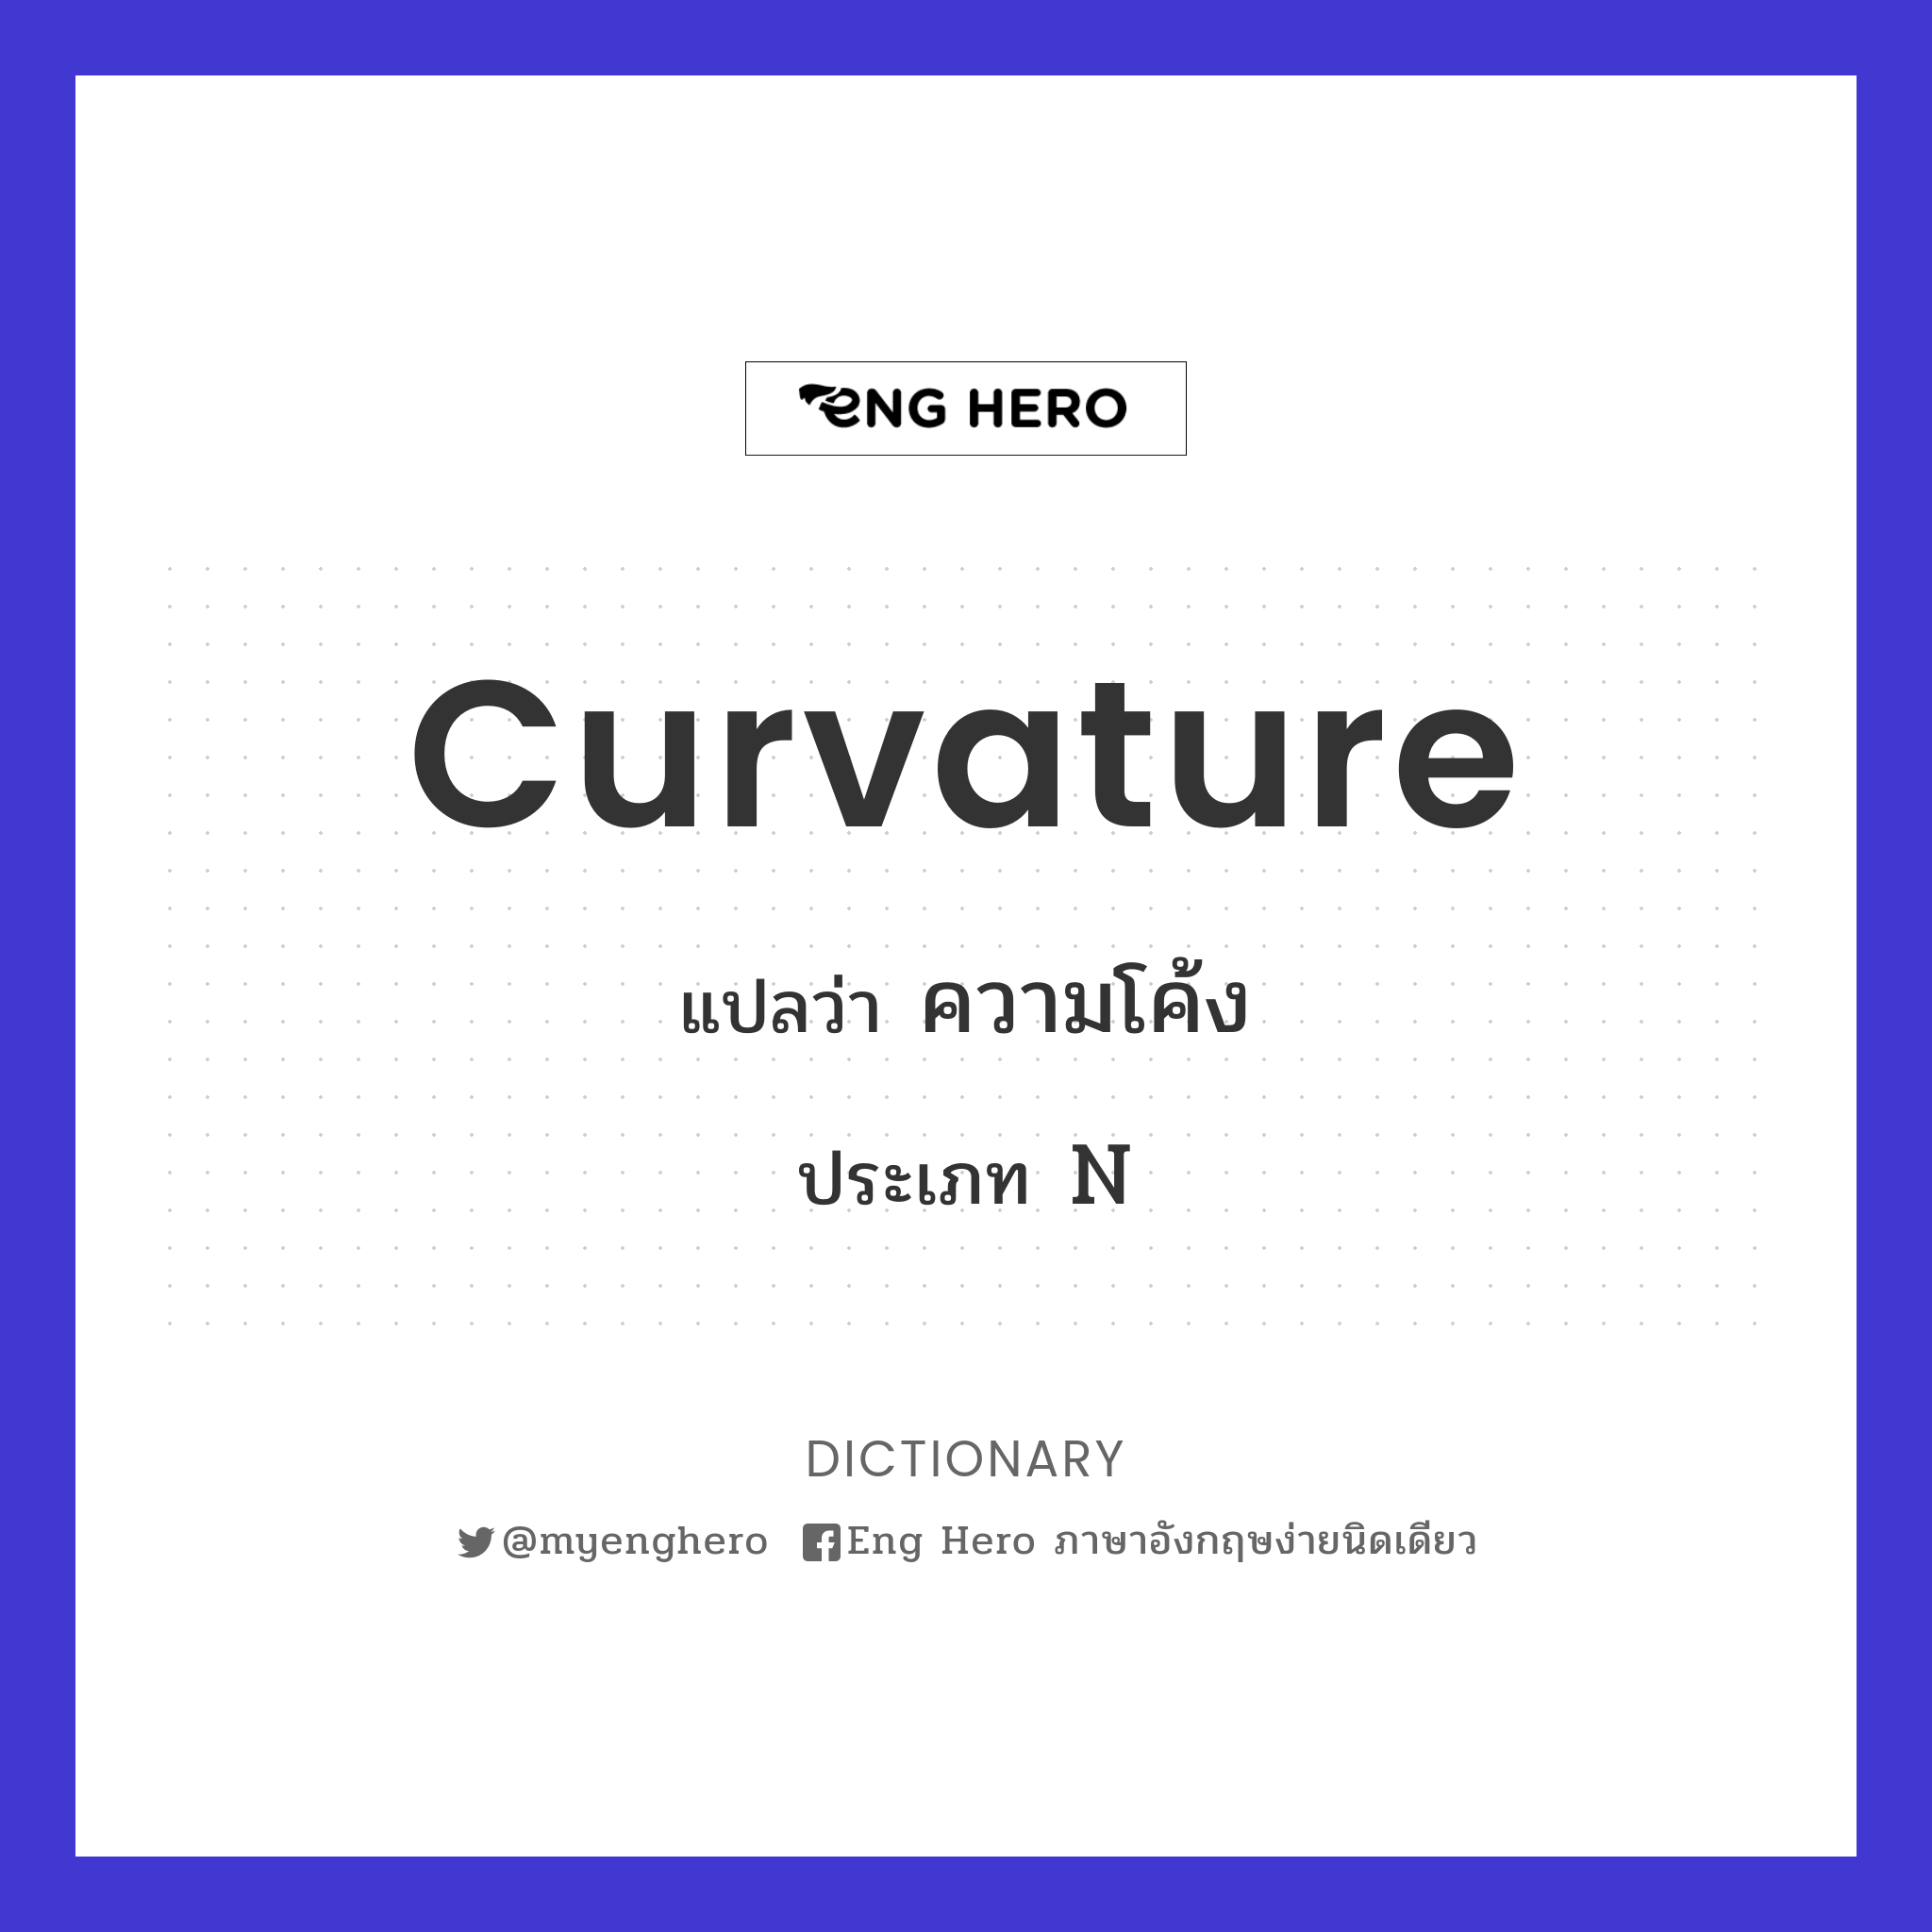 curvature